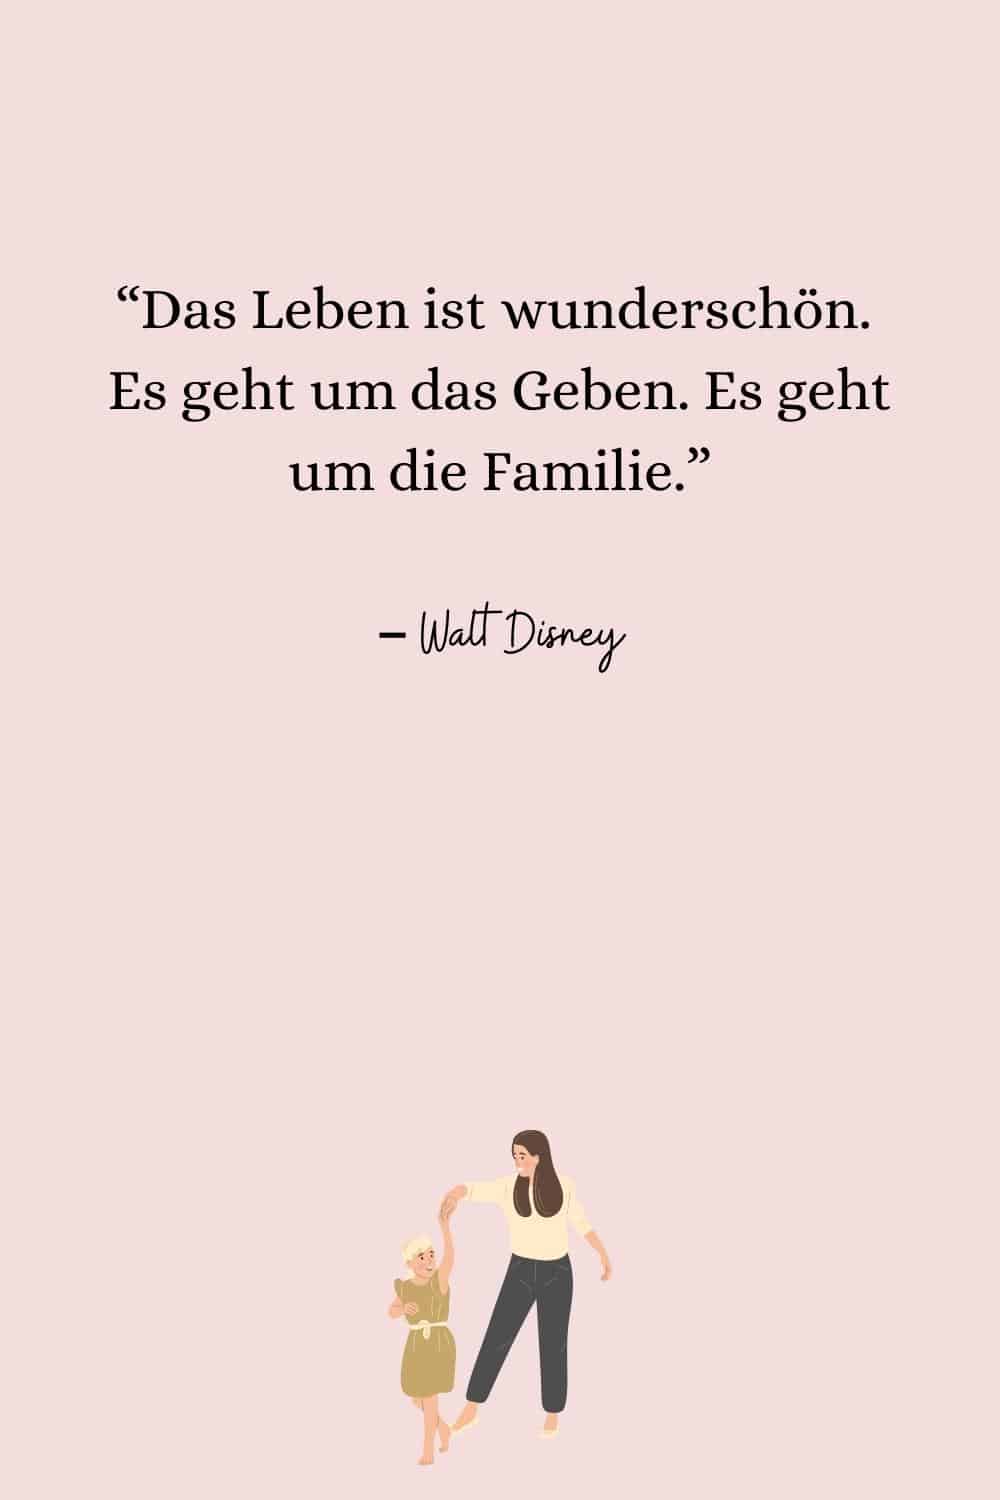 “Das Leben ist wunderschön. Es geht um das Geben. Es geht um die Familie.” – Walt Disney